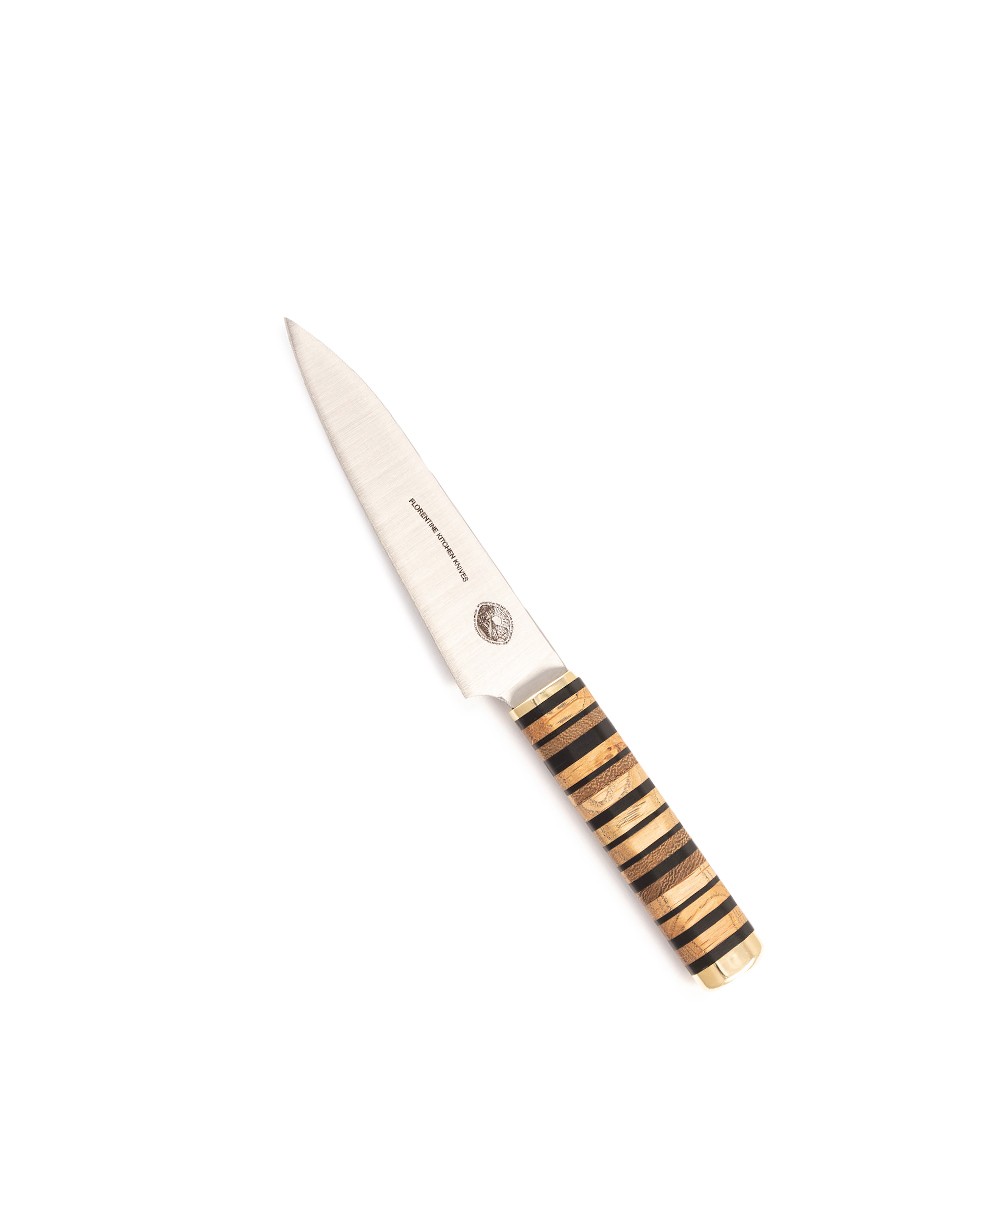 Produktbild des Kedma Paring Küchenmesser in wood & black von Florentine Kitchen Knives im RAUM concept store 